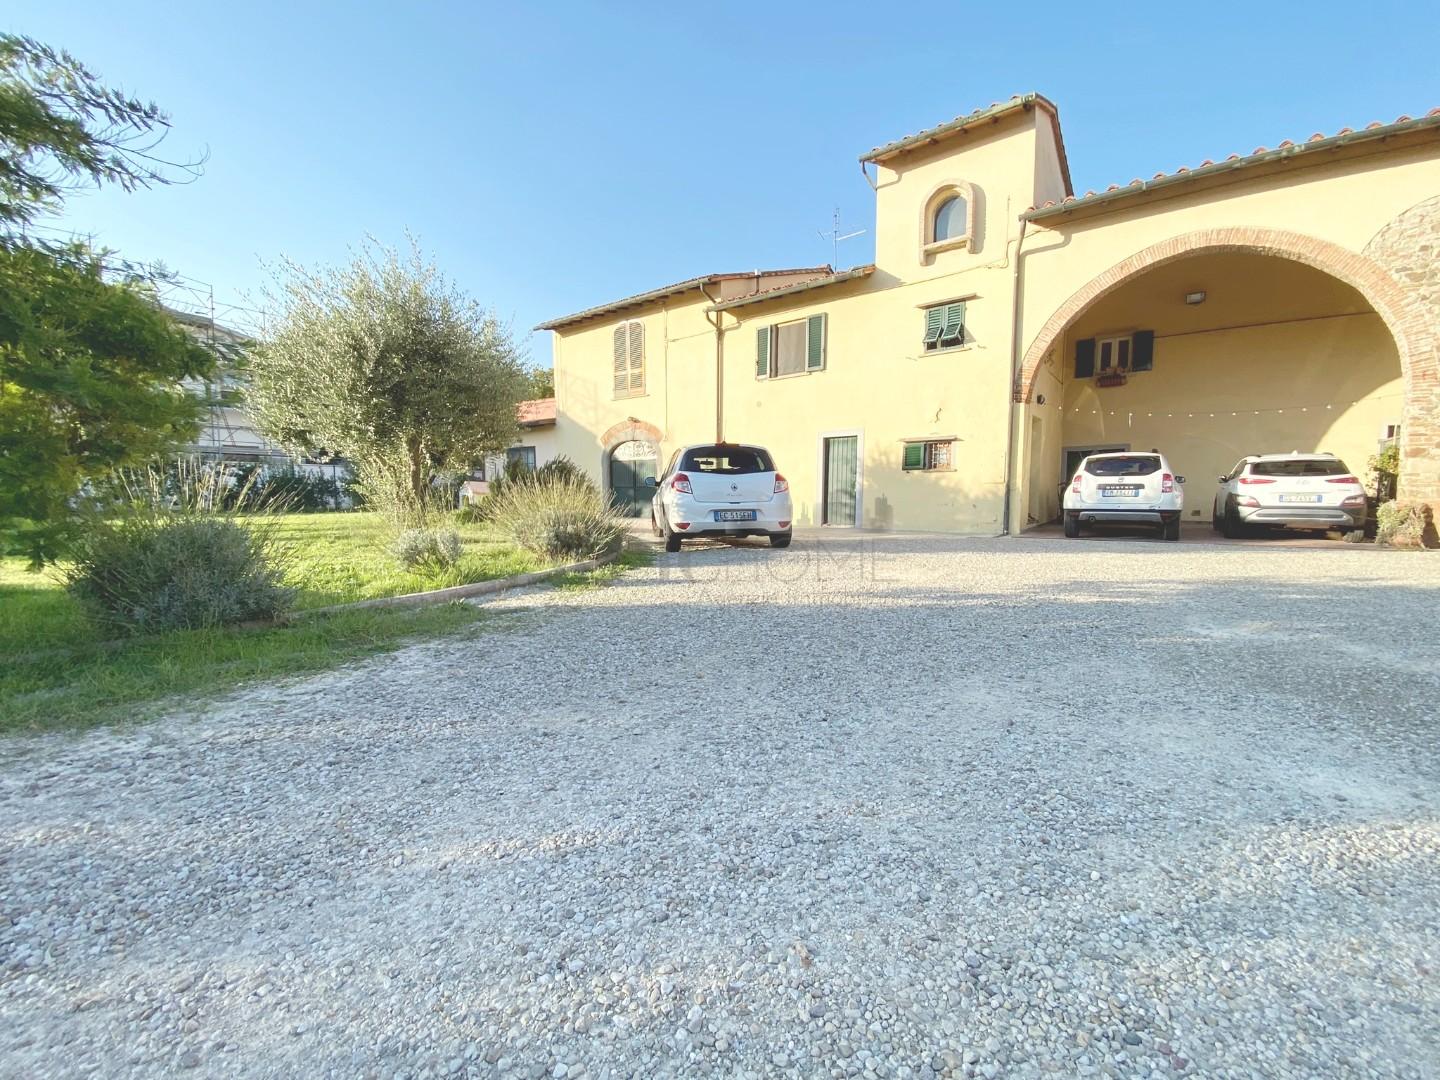 Rustico / Casale in vendita a Campi Bisenzio, 7 locali, prezzo € 670.000 | PortaleAgenzieImmobiliari.it